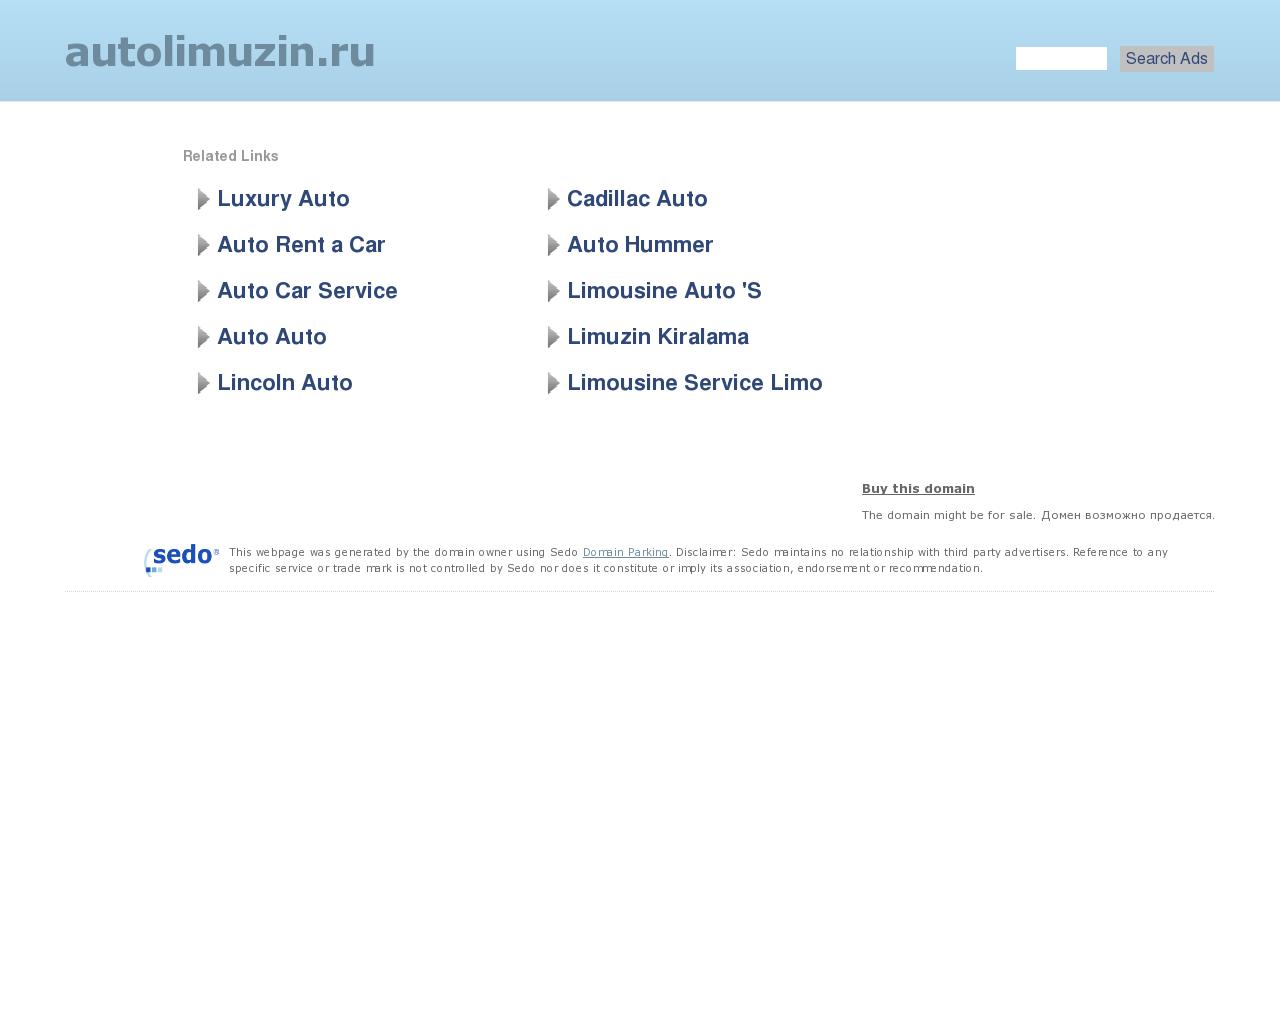 Изображение сайта autolimuzin.ru в разрешении 1280x1024